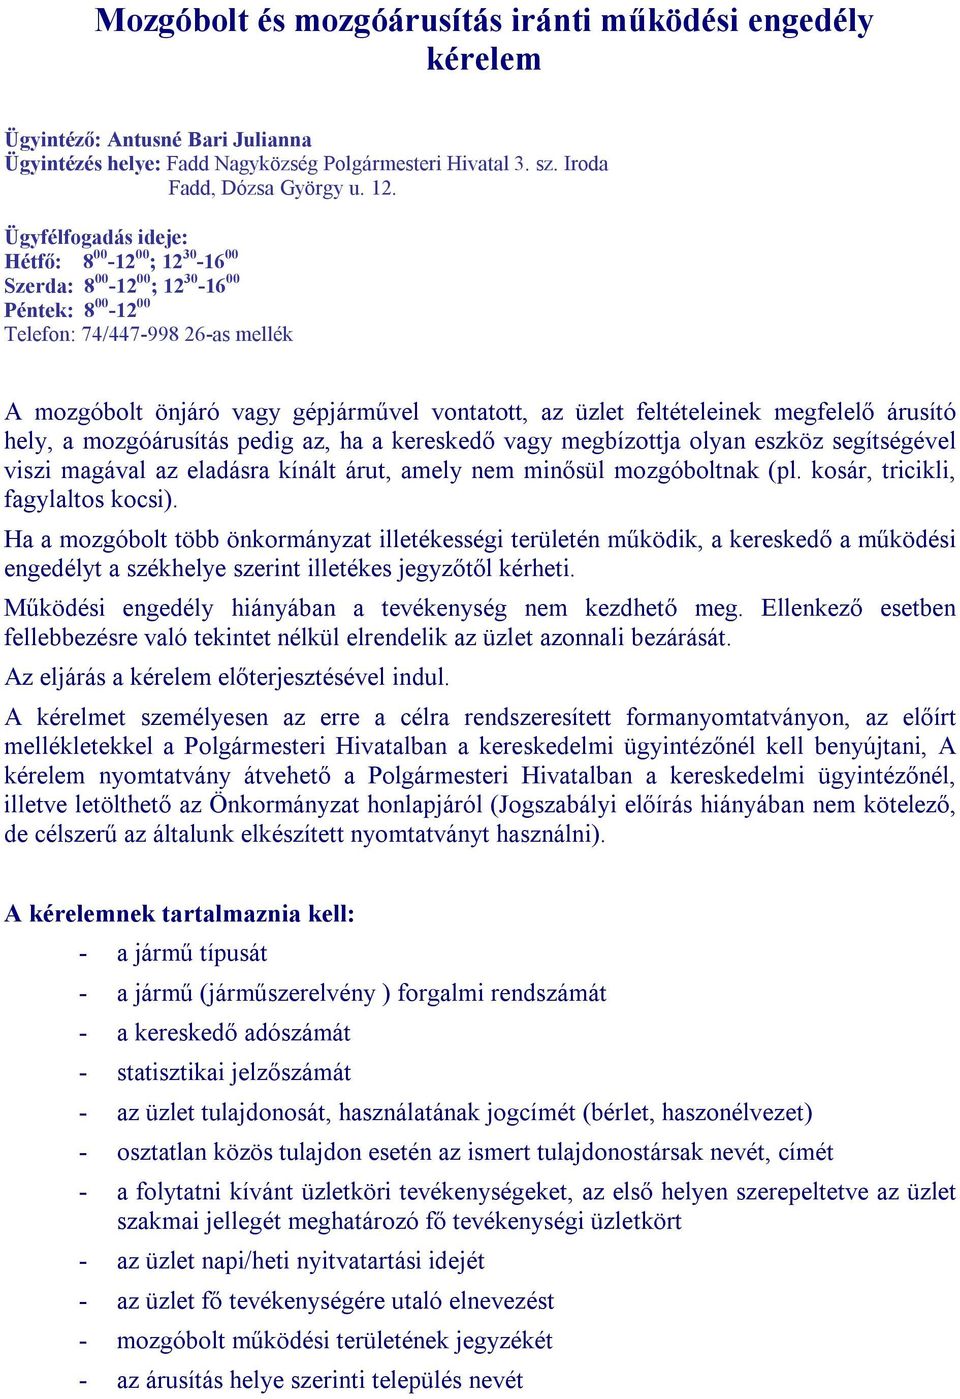 Mozgóbolt és mozgóárusítás iránti működési engedély kérelem - PDF Ingyenes  letöltés